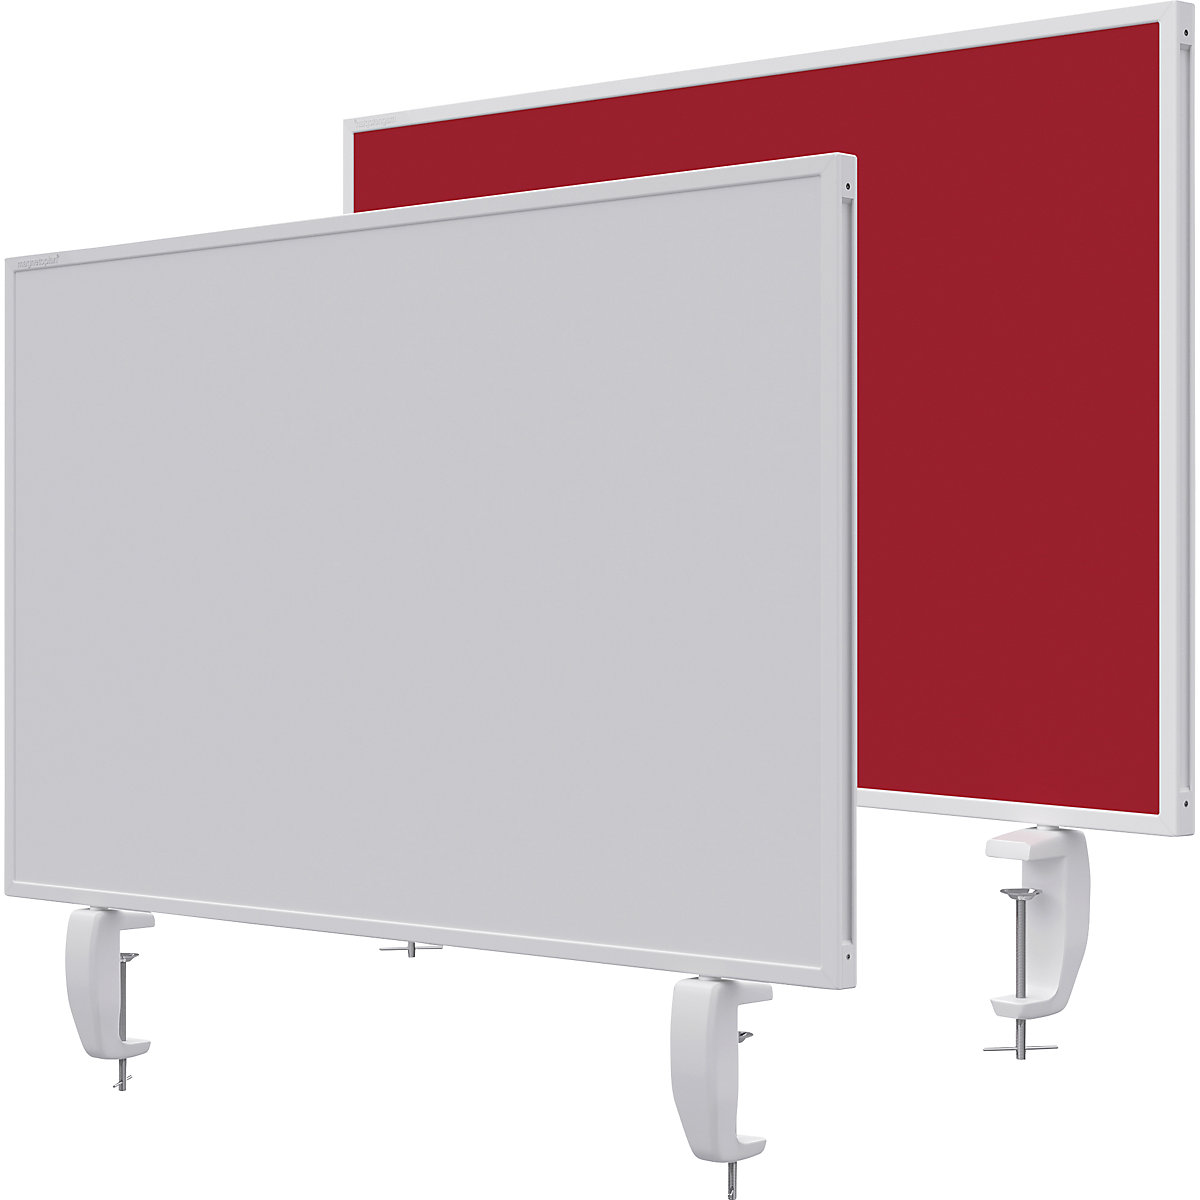 Namizna predelna stena VarioPin – magnetoplan, bela tabla/klobučevina, širina 800 mm, rdeče barve